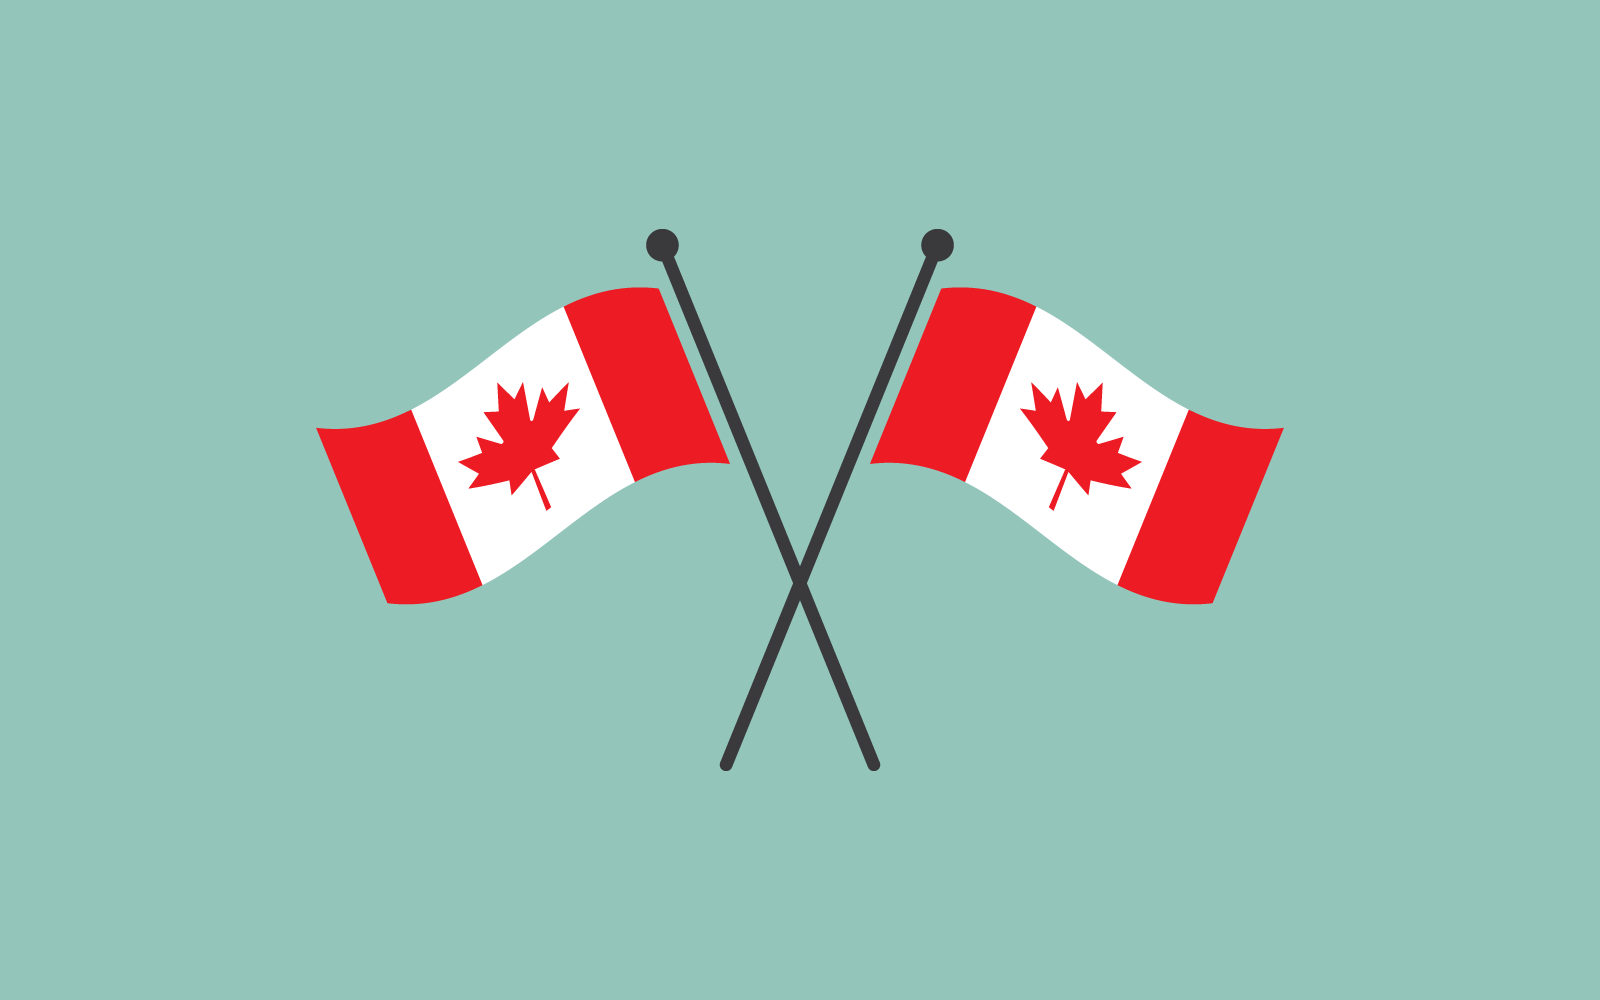 Plantilla vectorial de diseño plano de bandera de Canadá